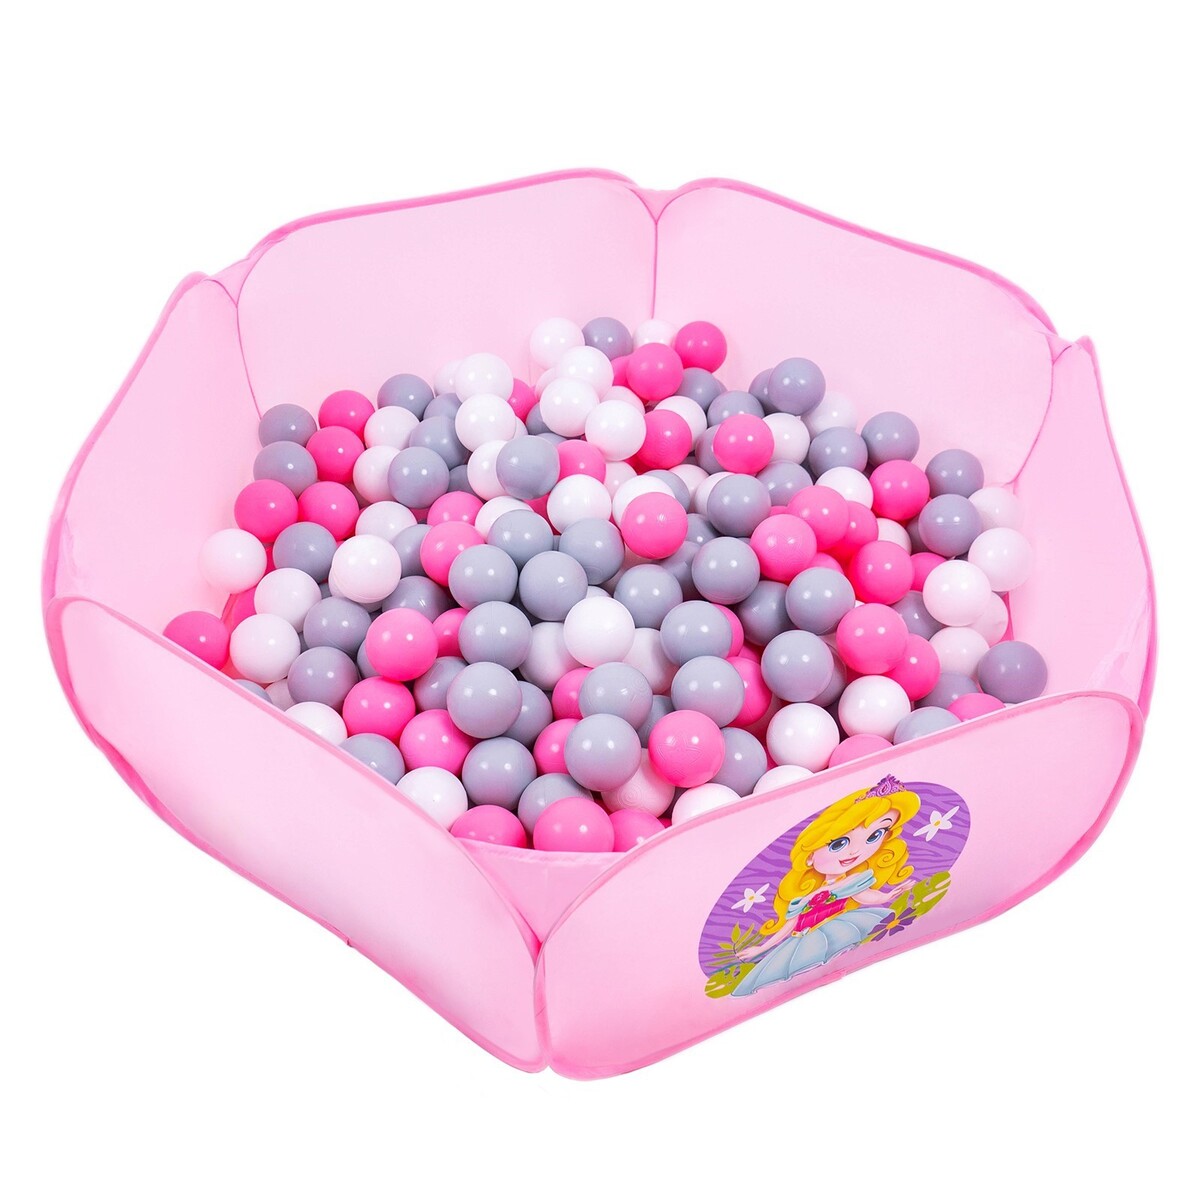 Шарики для сухого бассейна с рисунком, диаметр шара 7,5 см, набор 60 штук, цвет розовый, белый, серый кассон шарики для бассейна 50 шт